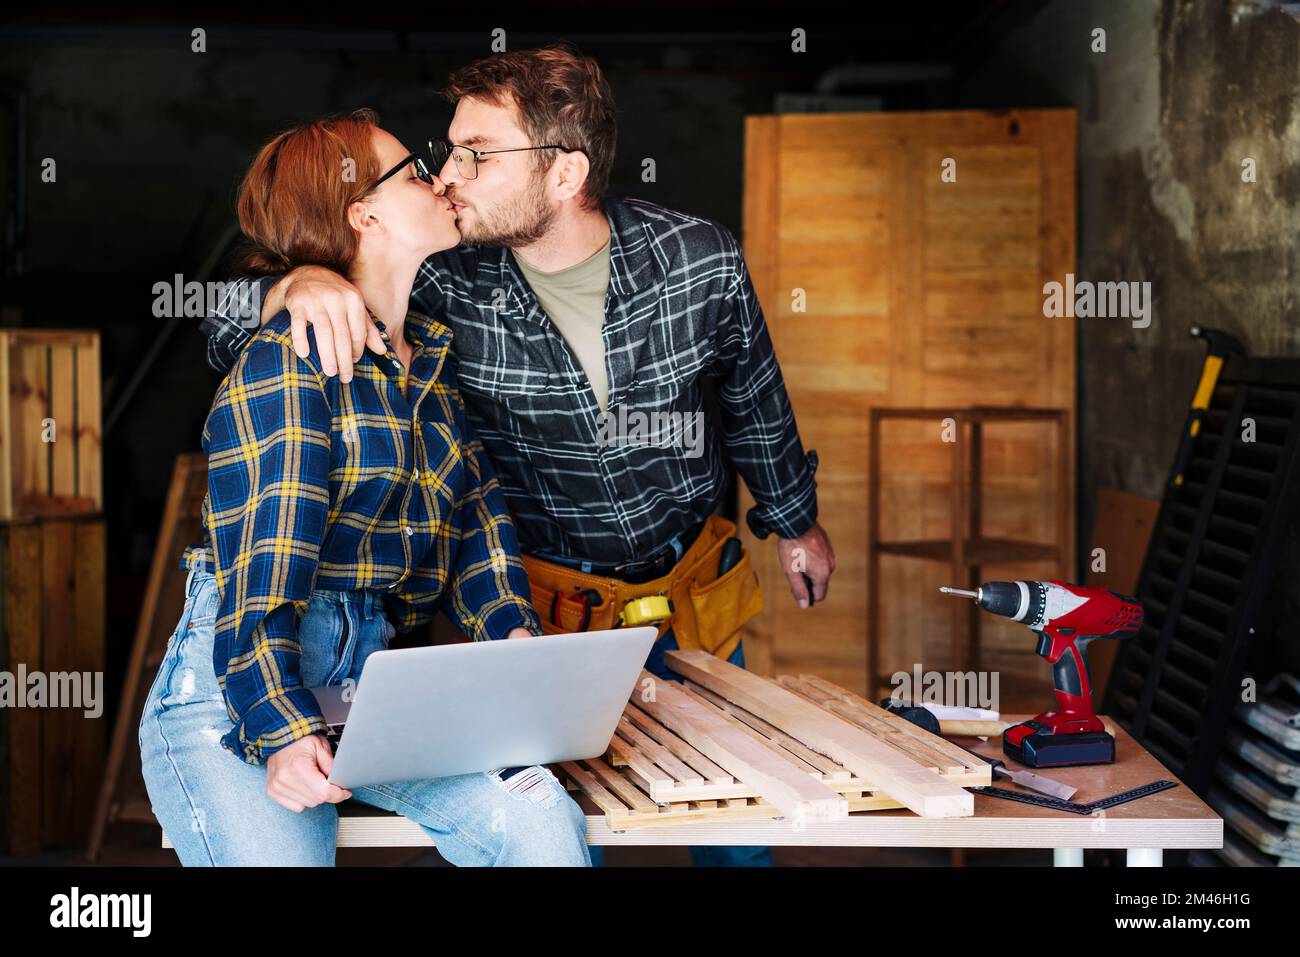 Junge Erwachsene Paare, die sich küssen und den Erfolg ihres kleinen Unternehmens feiern, während sie in ihrer Zimmereiwerkstatt arbeiten. Stockfoto